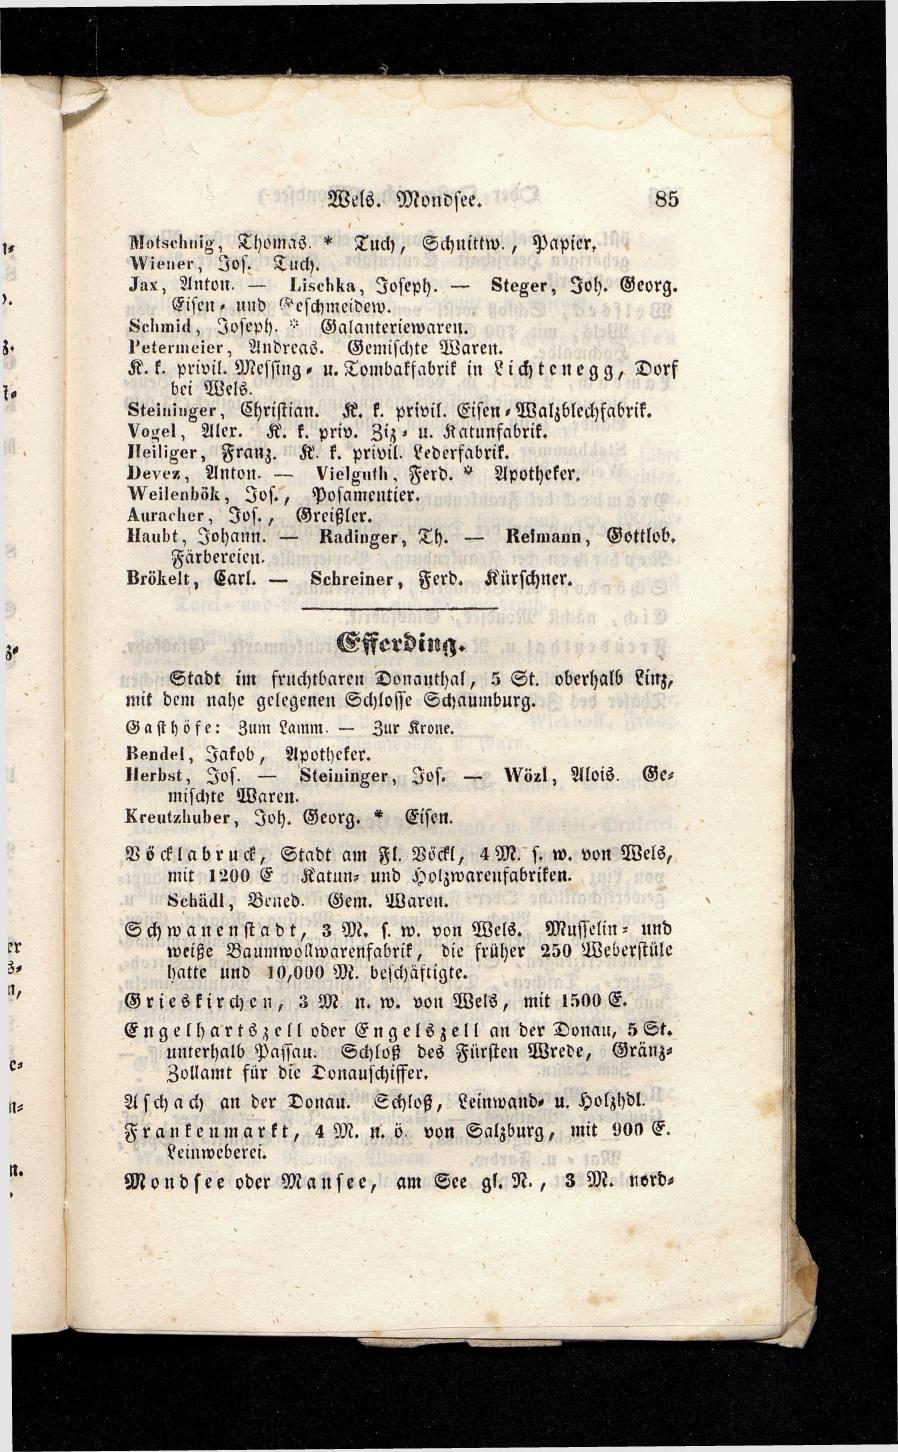 Grosses Adressbuch der Kaufleute. No. 13. Oesterreich ober u. unter der Enns 1844 - Seite 89